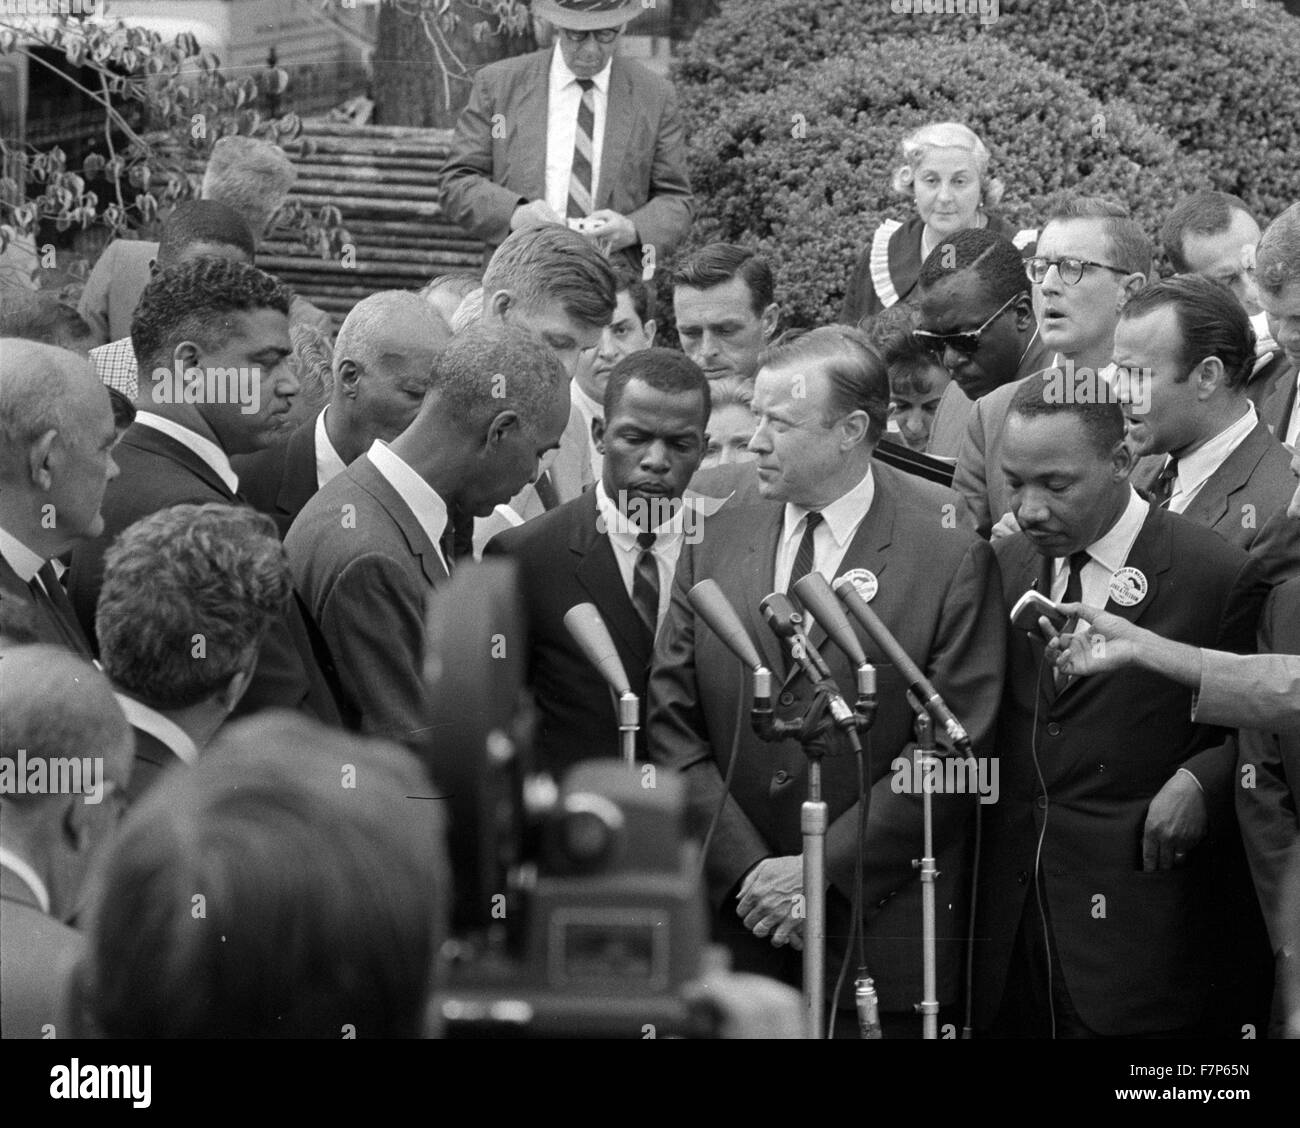 Fotografía de los líderes de los derechos civiles en la reunión con el Presidente John F. Kennedy (1917-1963) político estadounidense. Fecha 1963 Foto de stock